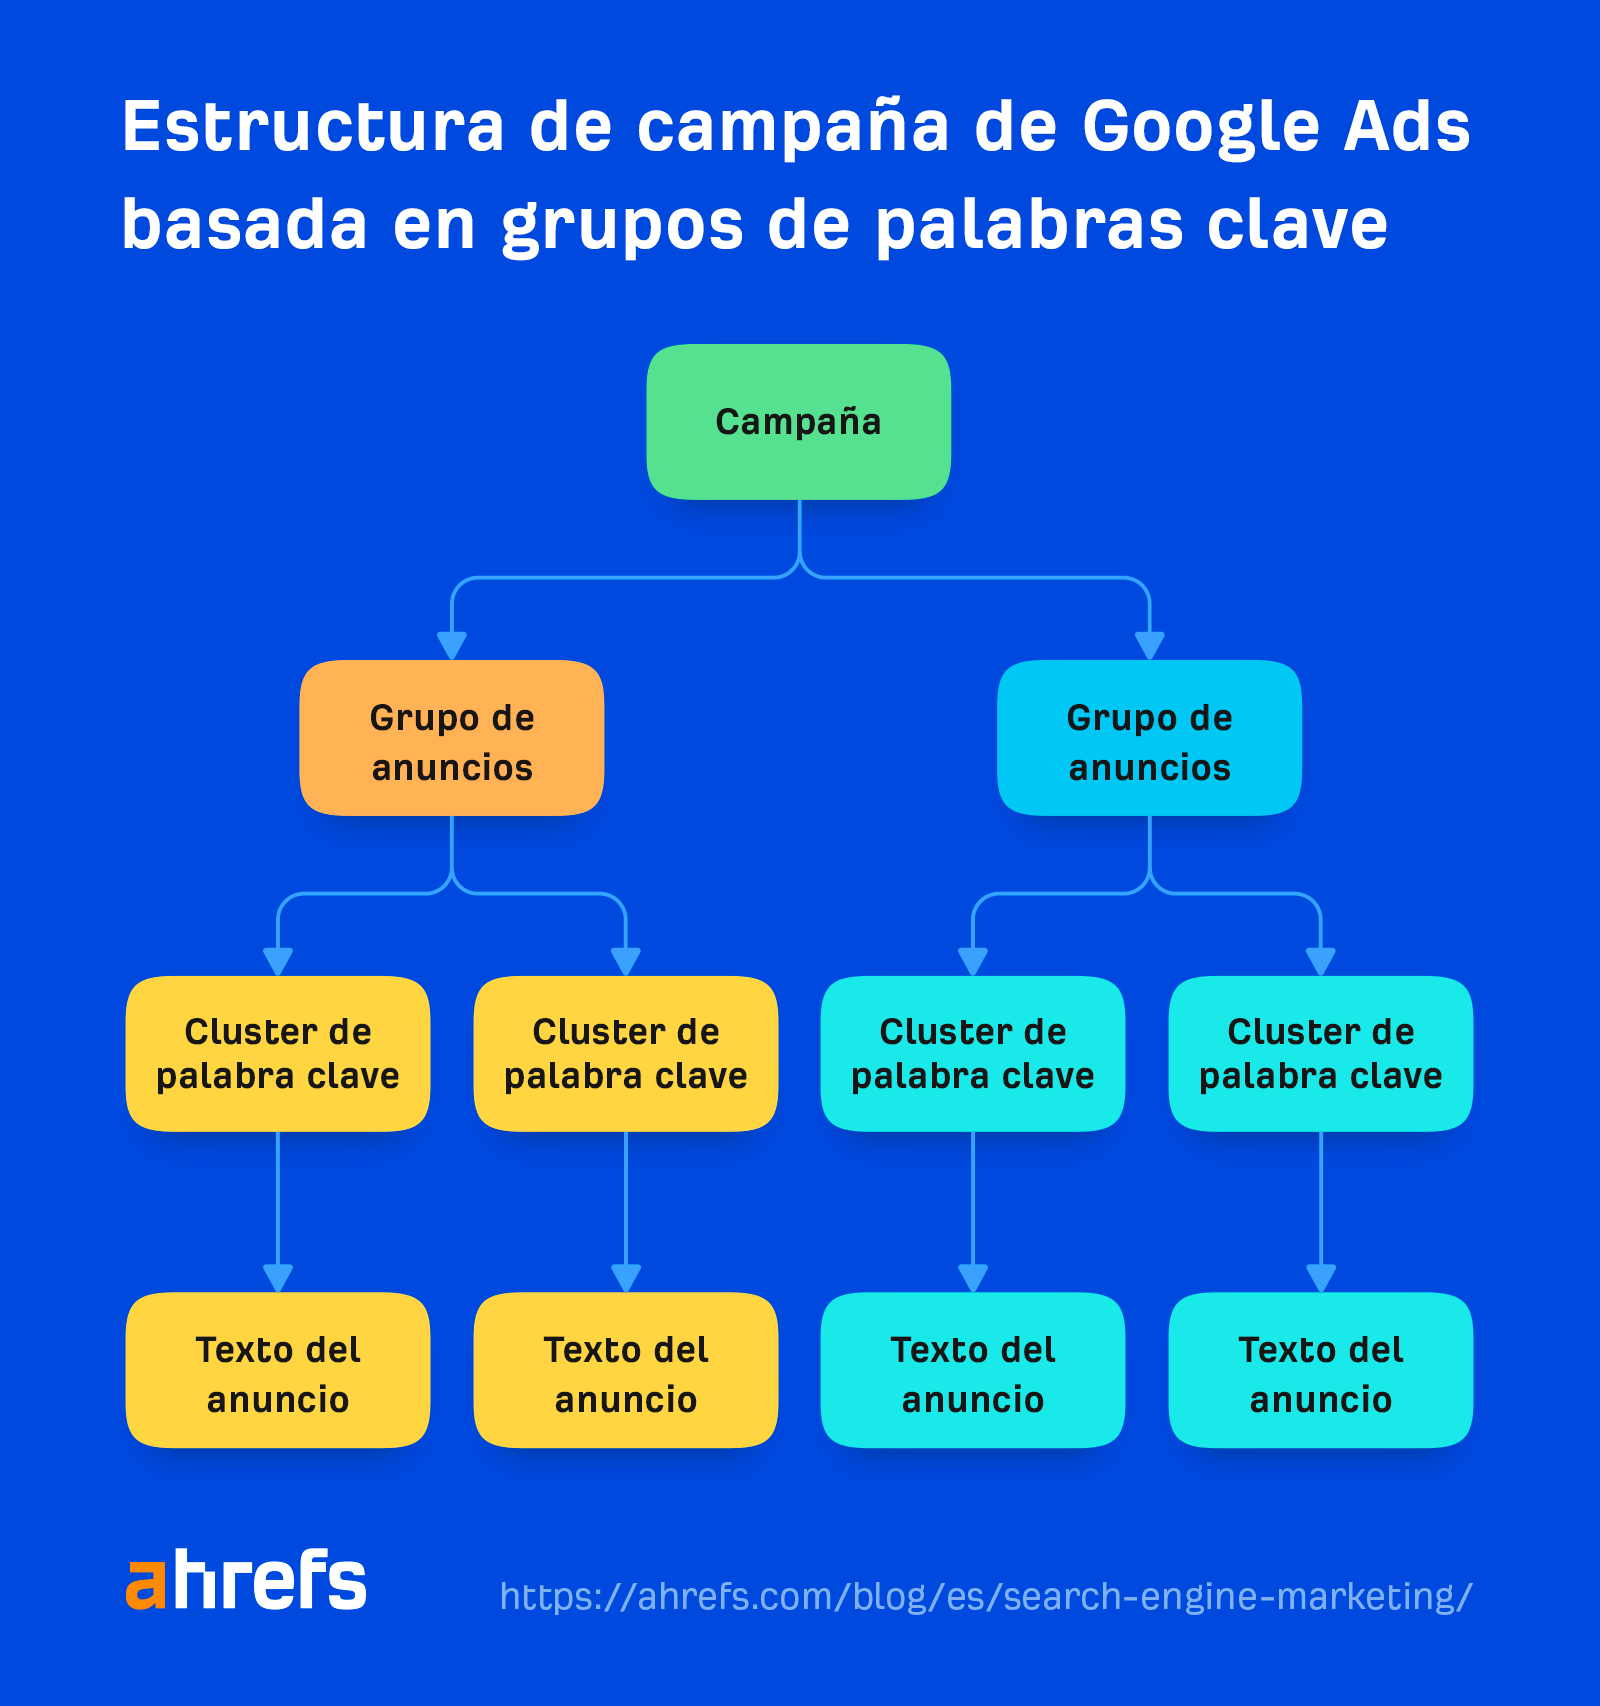 Estructura de campaña de Google Ads basada en grupos de palabras clave.